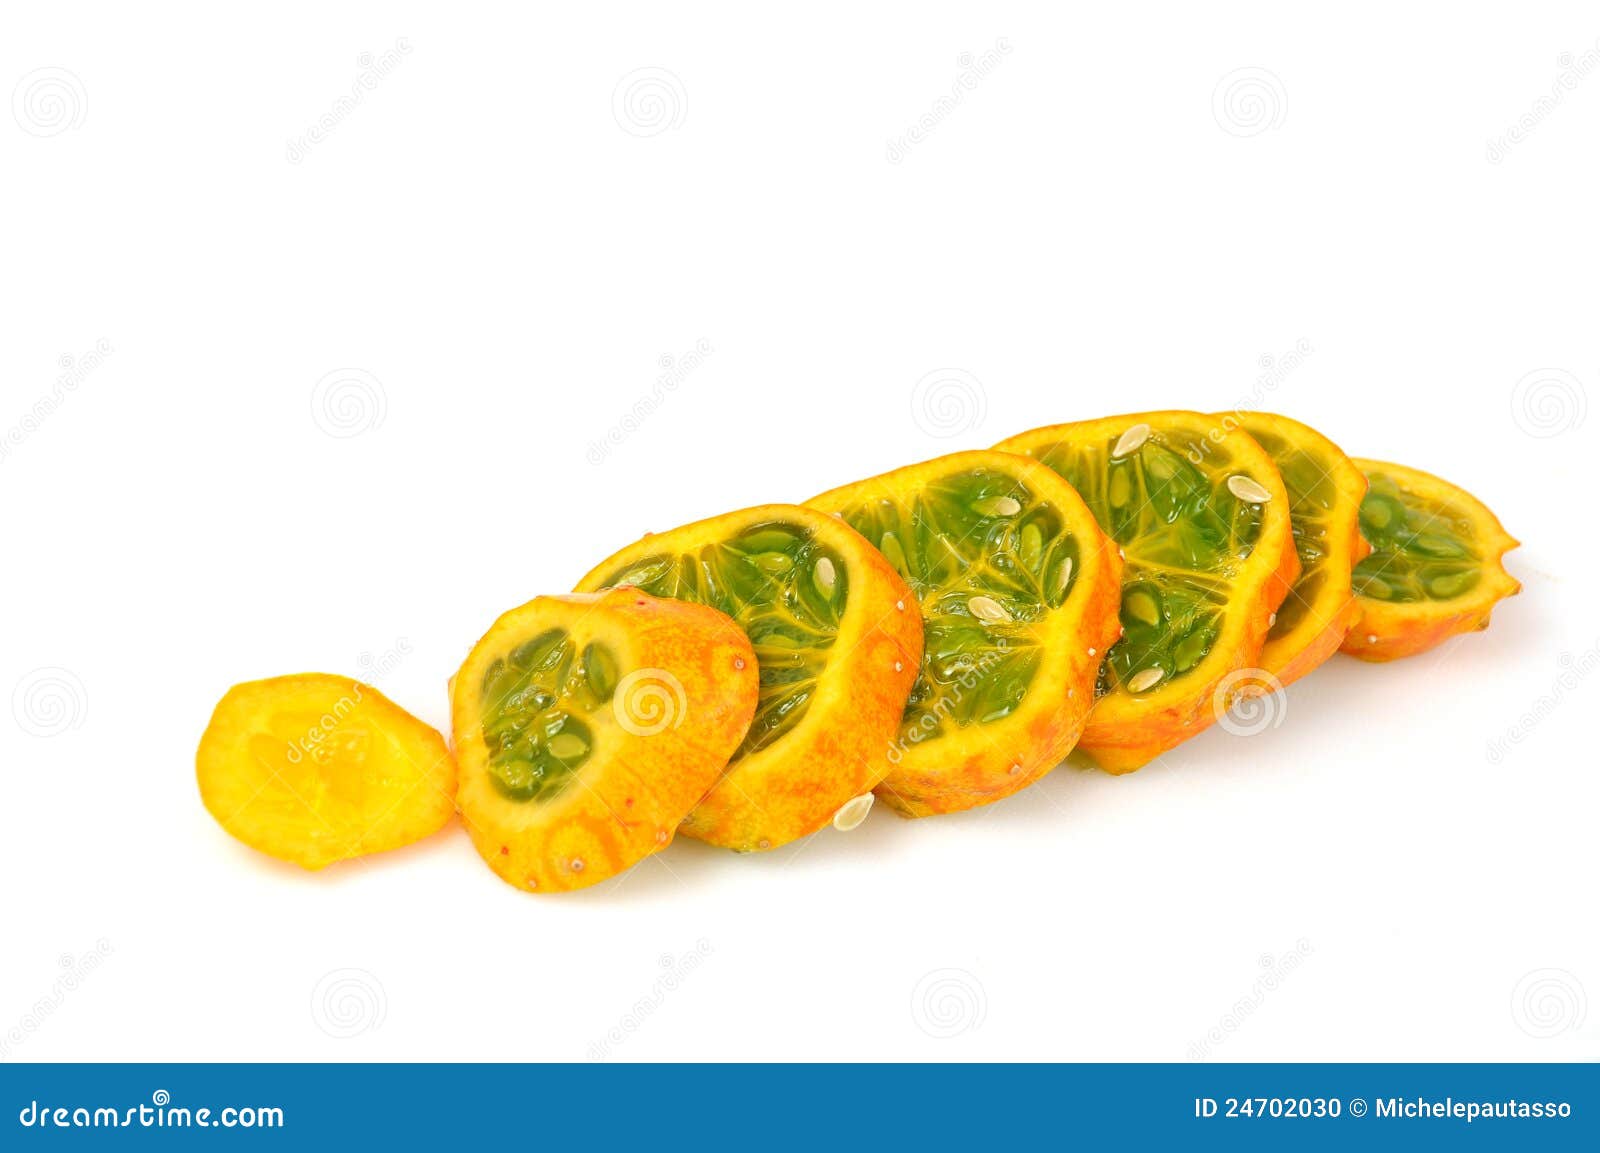 fruta del paraiso sliced